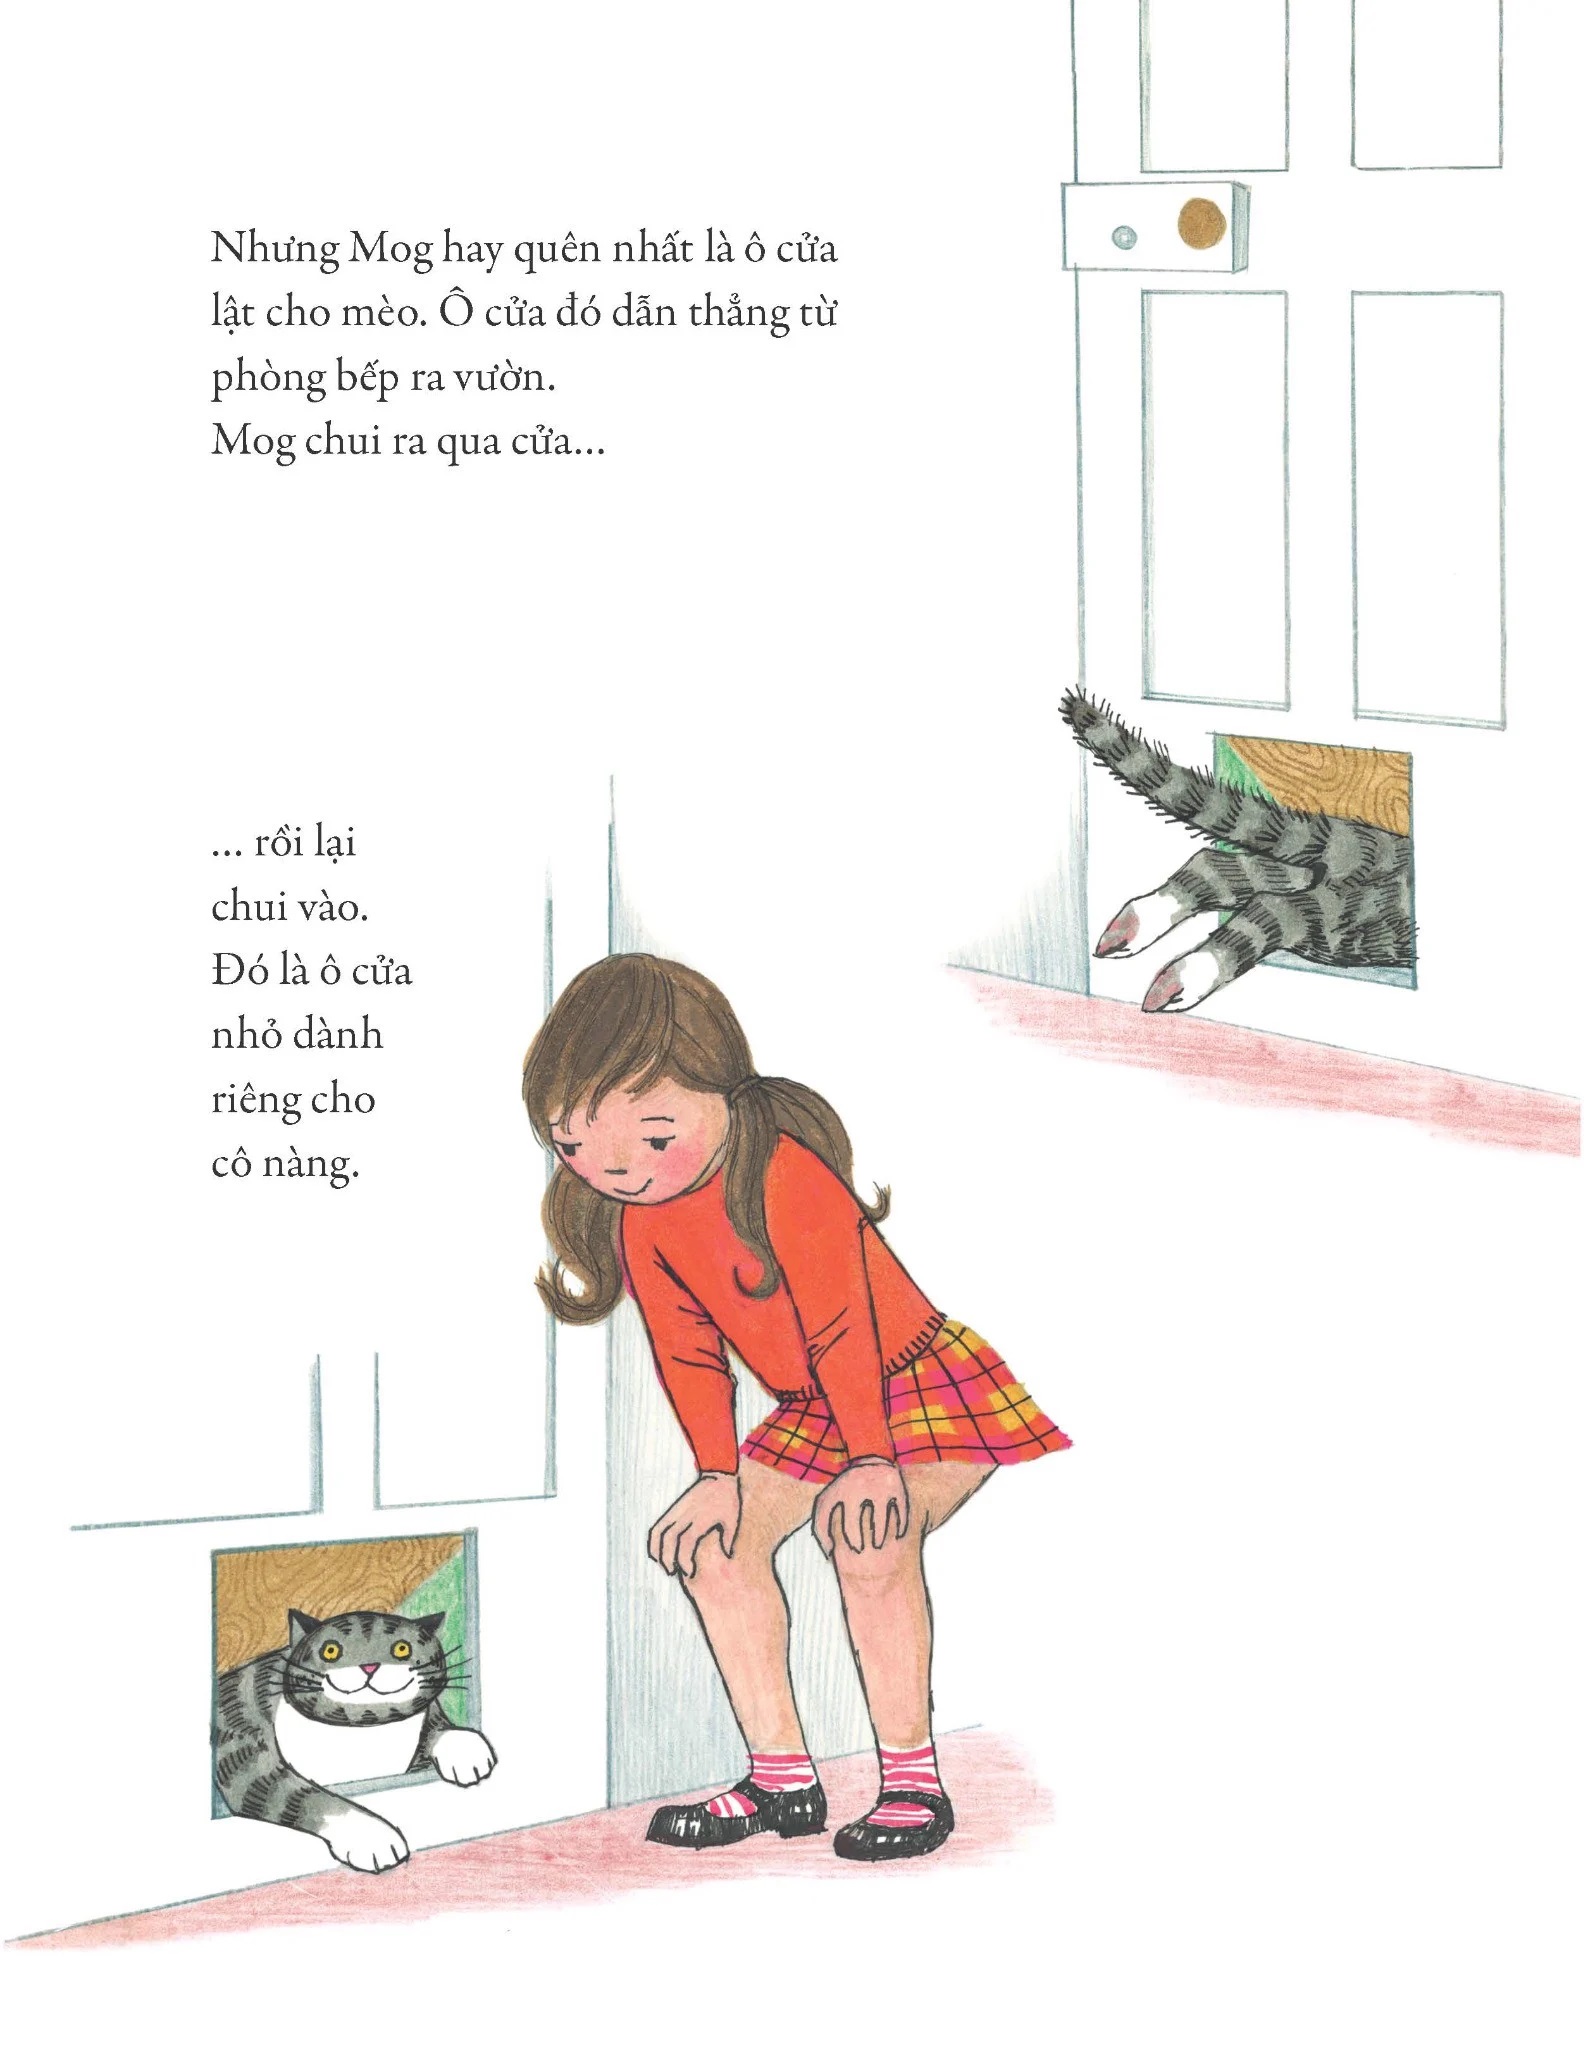 Mèo Mog Mập : Cô Mèo Cứu Em Bé - Cô Mèo và Bà - Cô Mèo Đãng Trí - Chuyện Ở Phòng Khám - Giáng Sinh Của Cô Mèo (Trọn bộ 5 quyển)